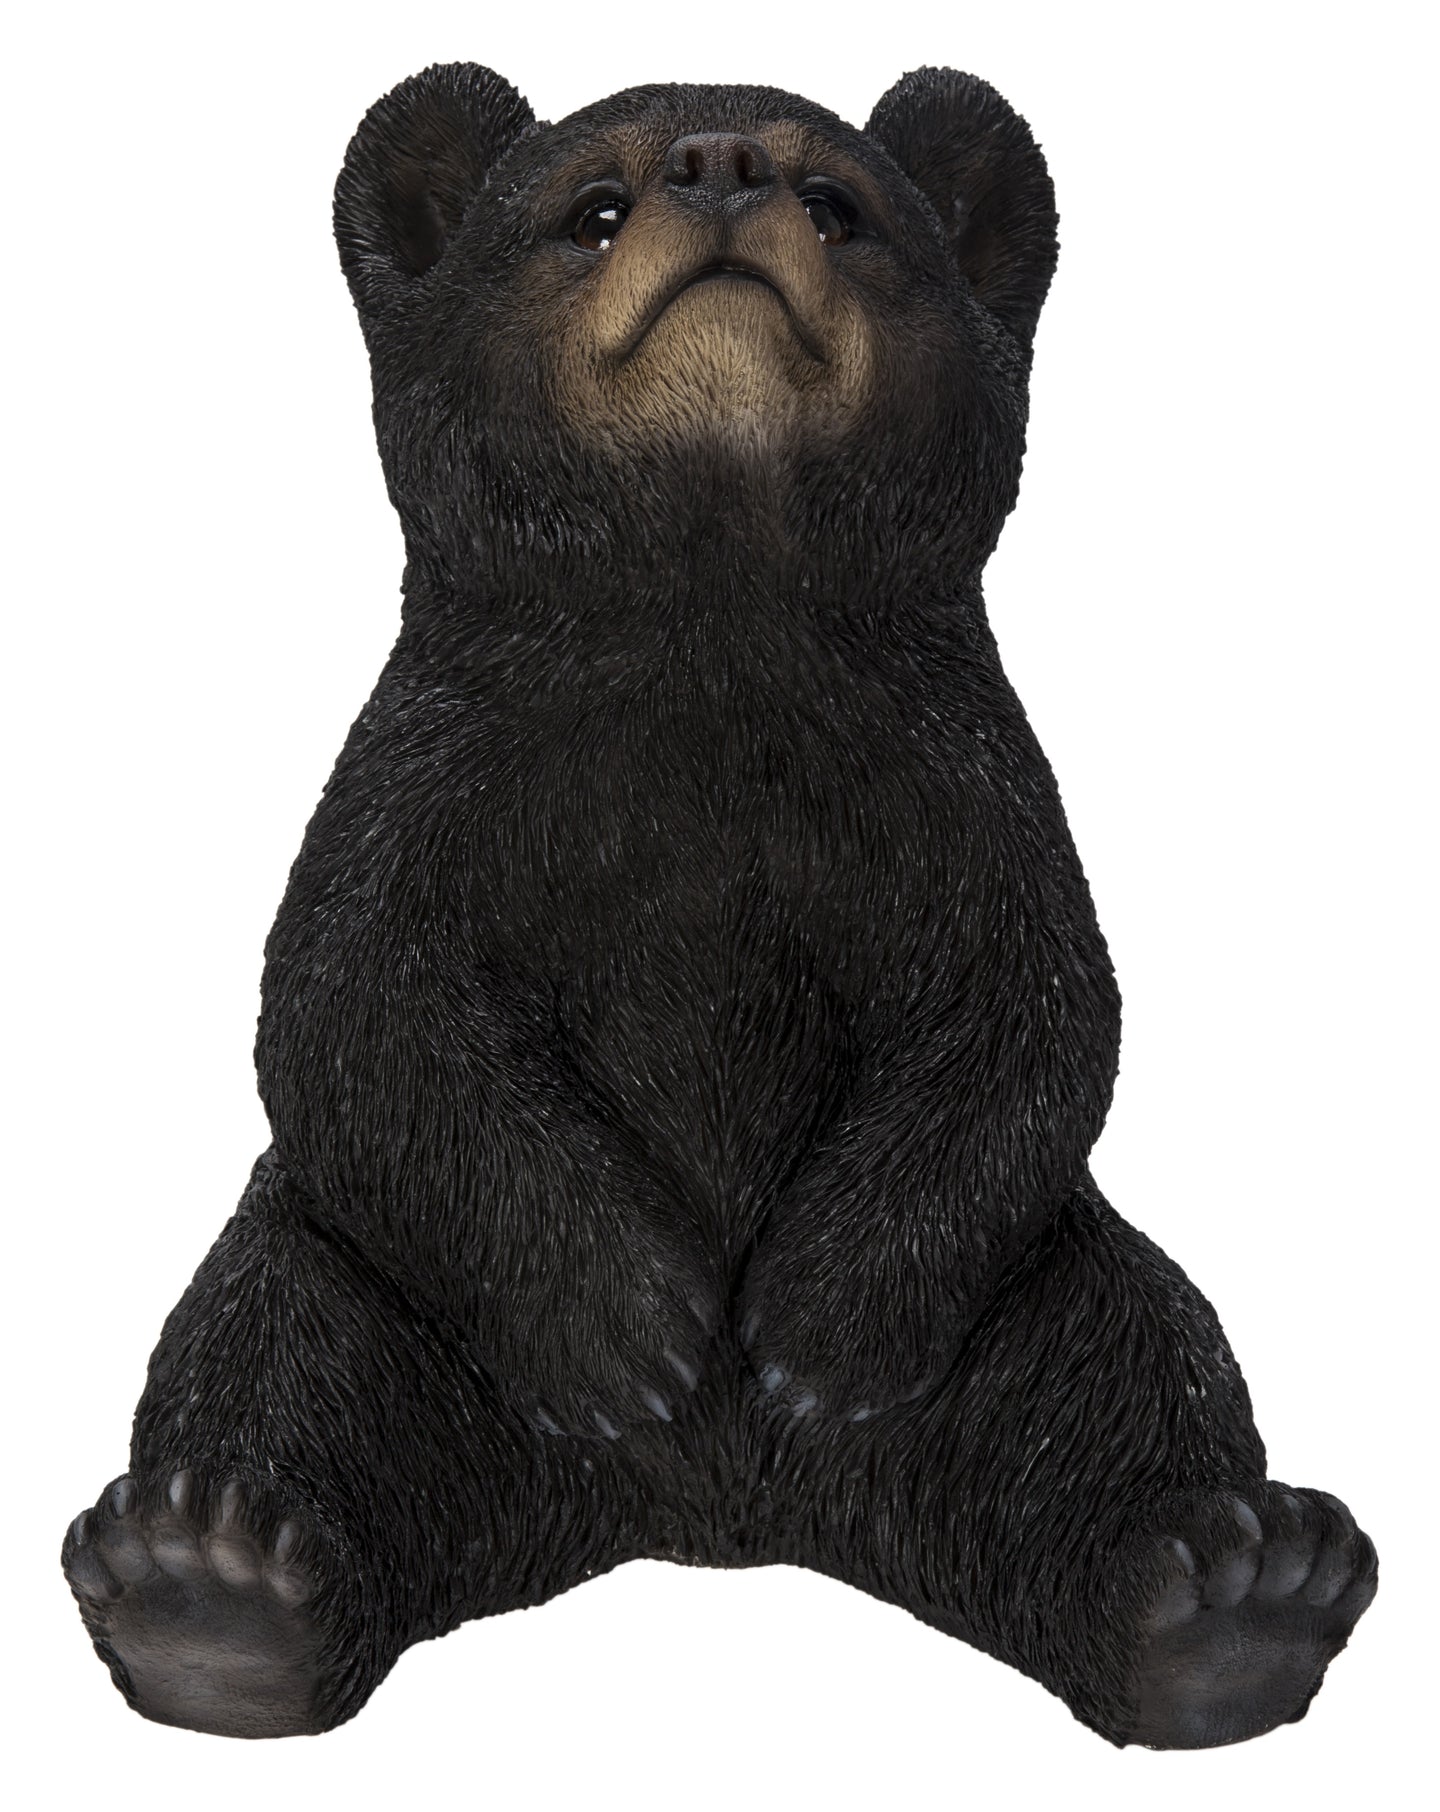 87957-G - Sitting Black Bear Cub With Head Up